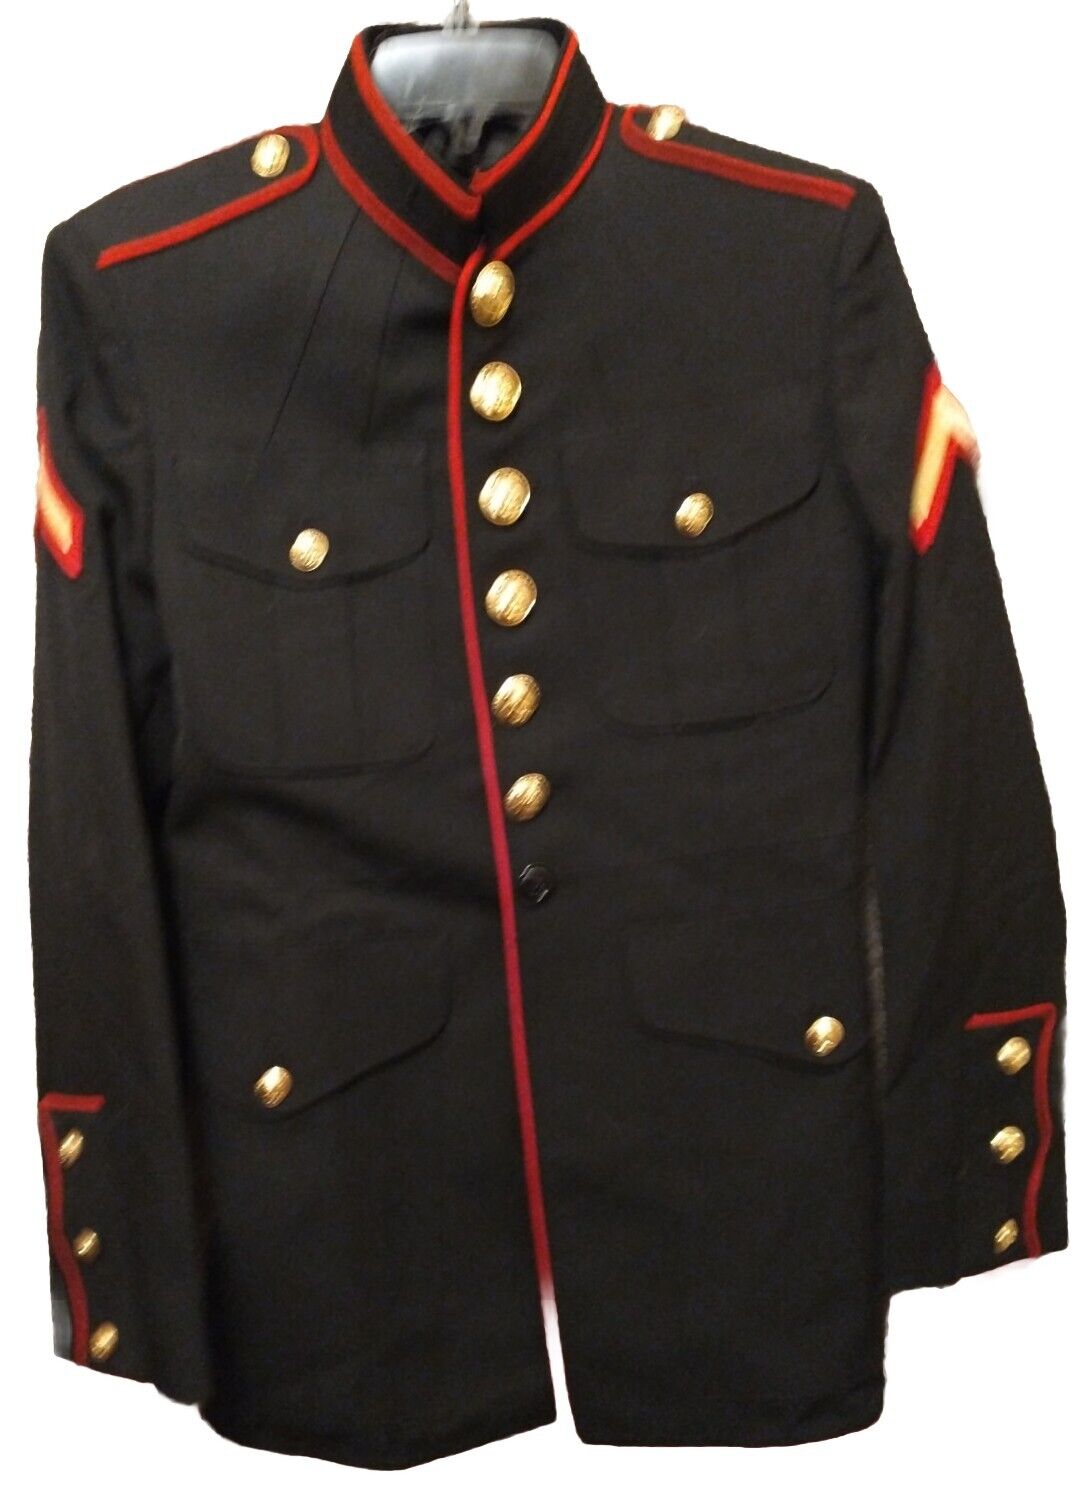 US Marines USMC Enlisted Dress Blue Male Jacket Coat Size 39 S